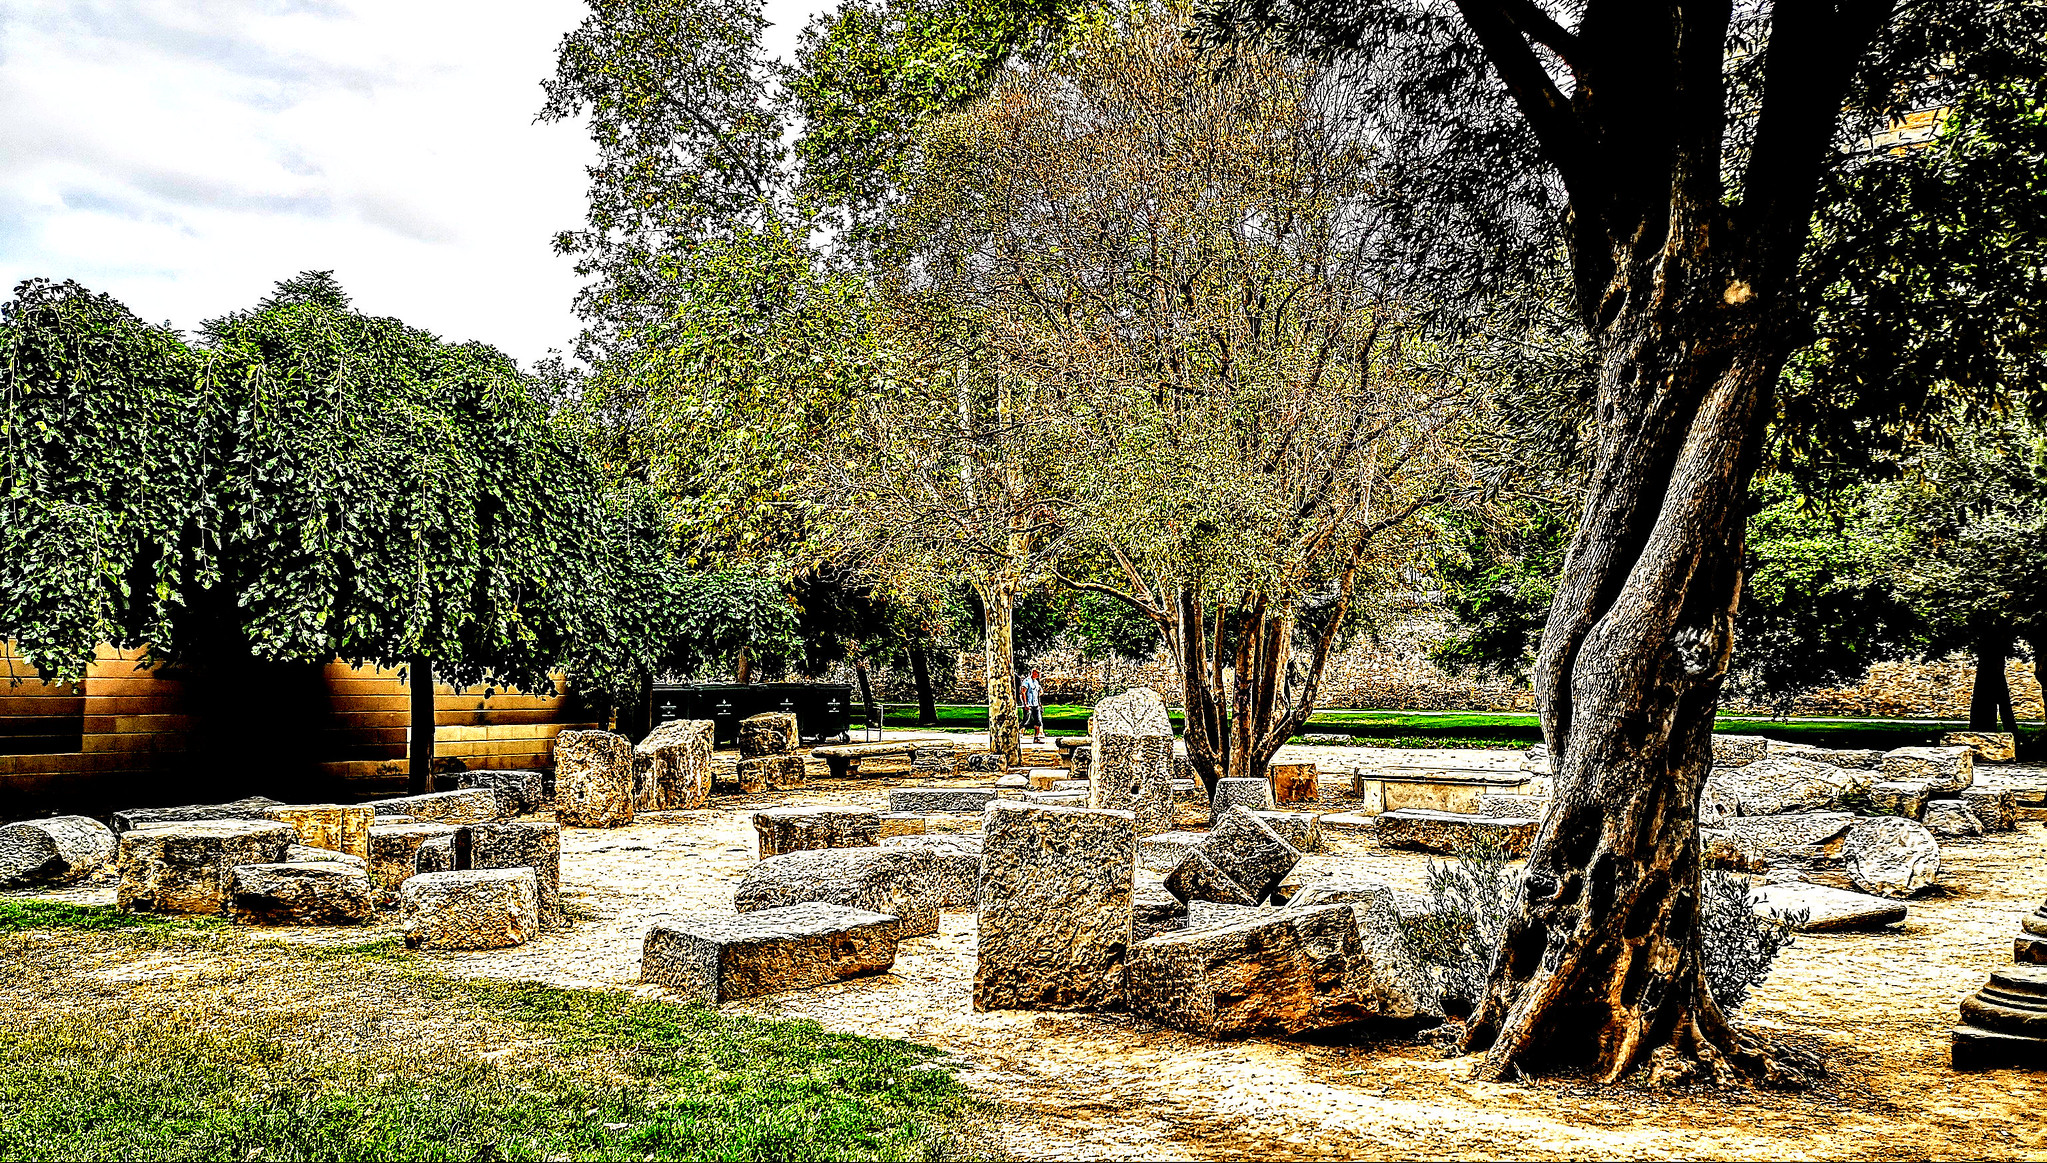 Jardín arqueológico en el Parque Urbano del Turia, con restos de época romana que proceden de las excavaciones arqueológicas del solar de la Almoina.